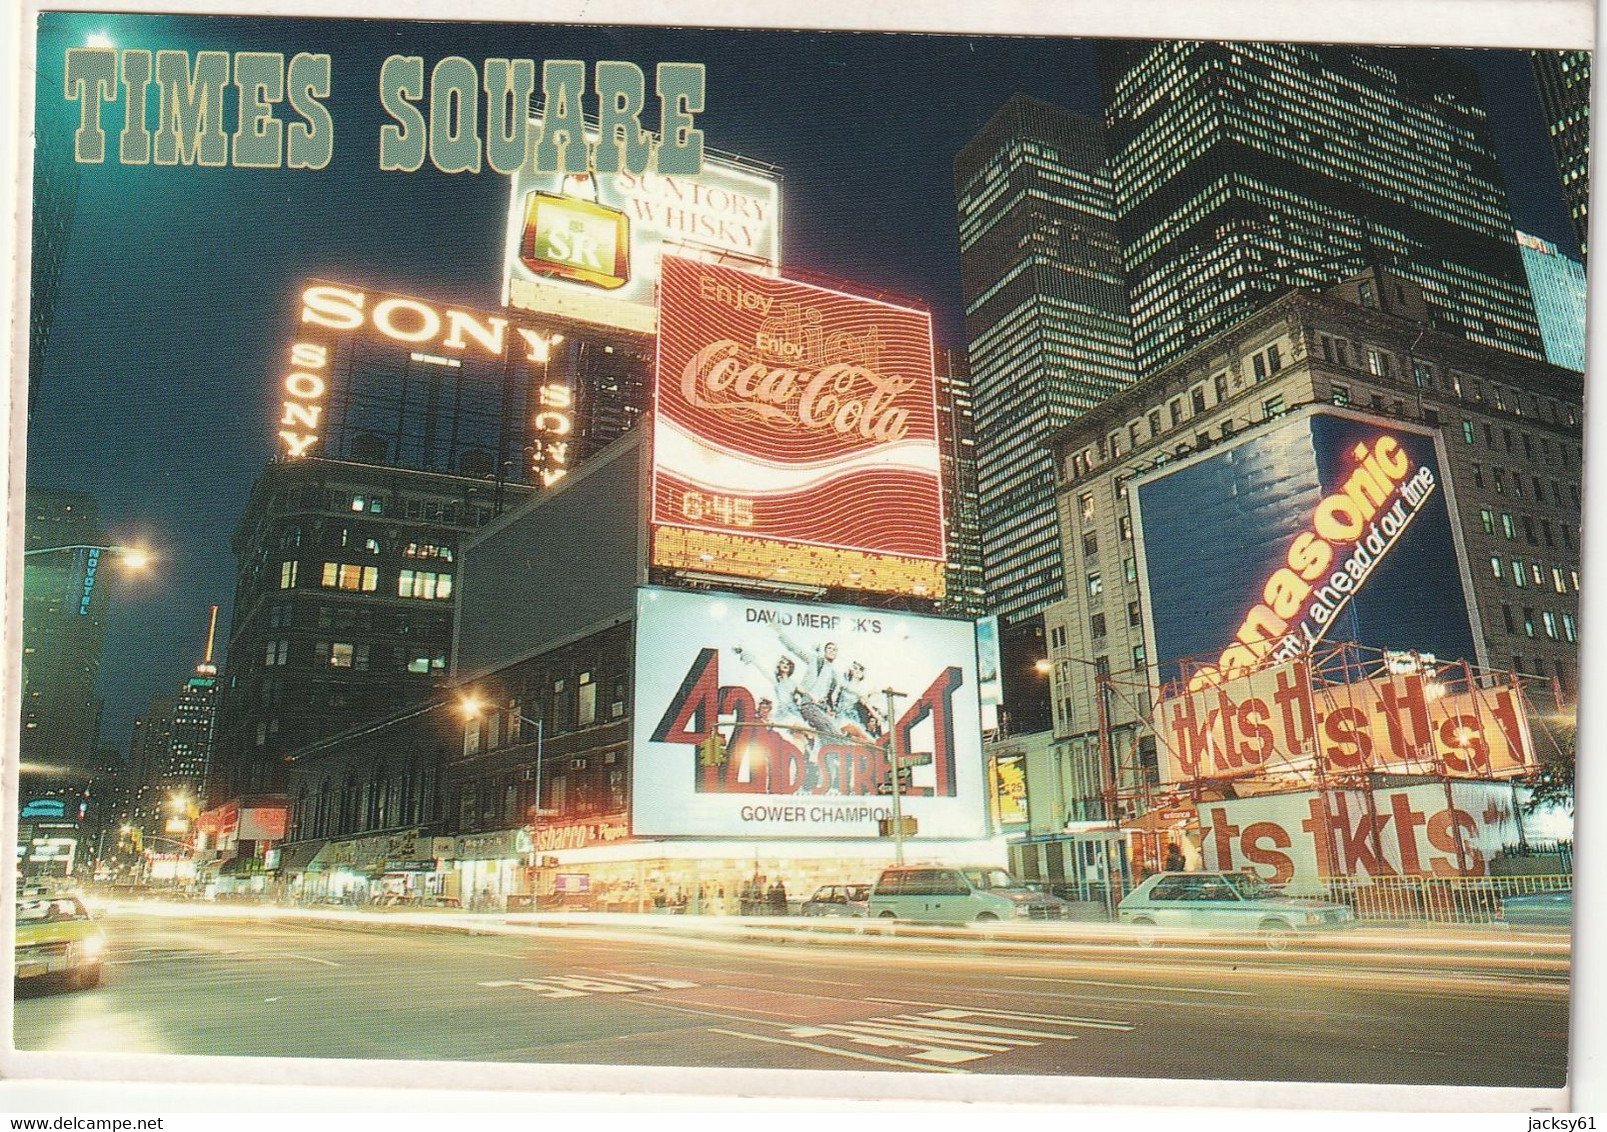 Times Square - Time Square